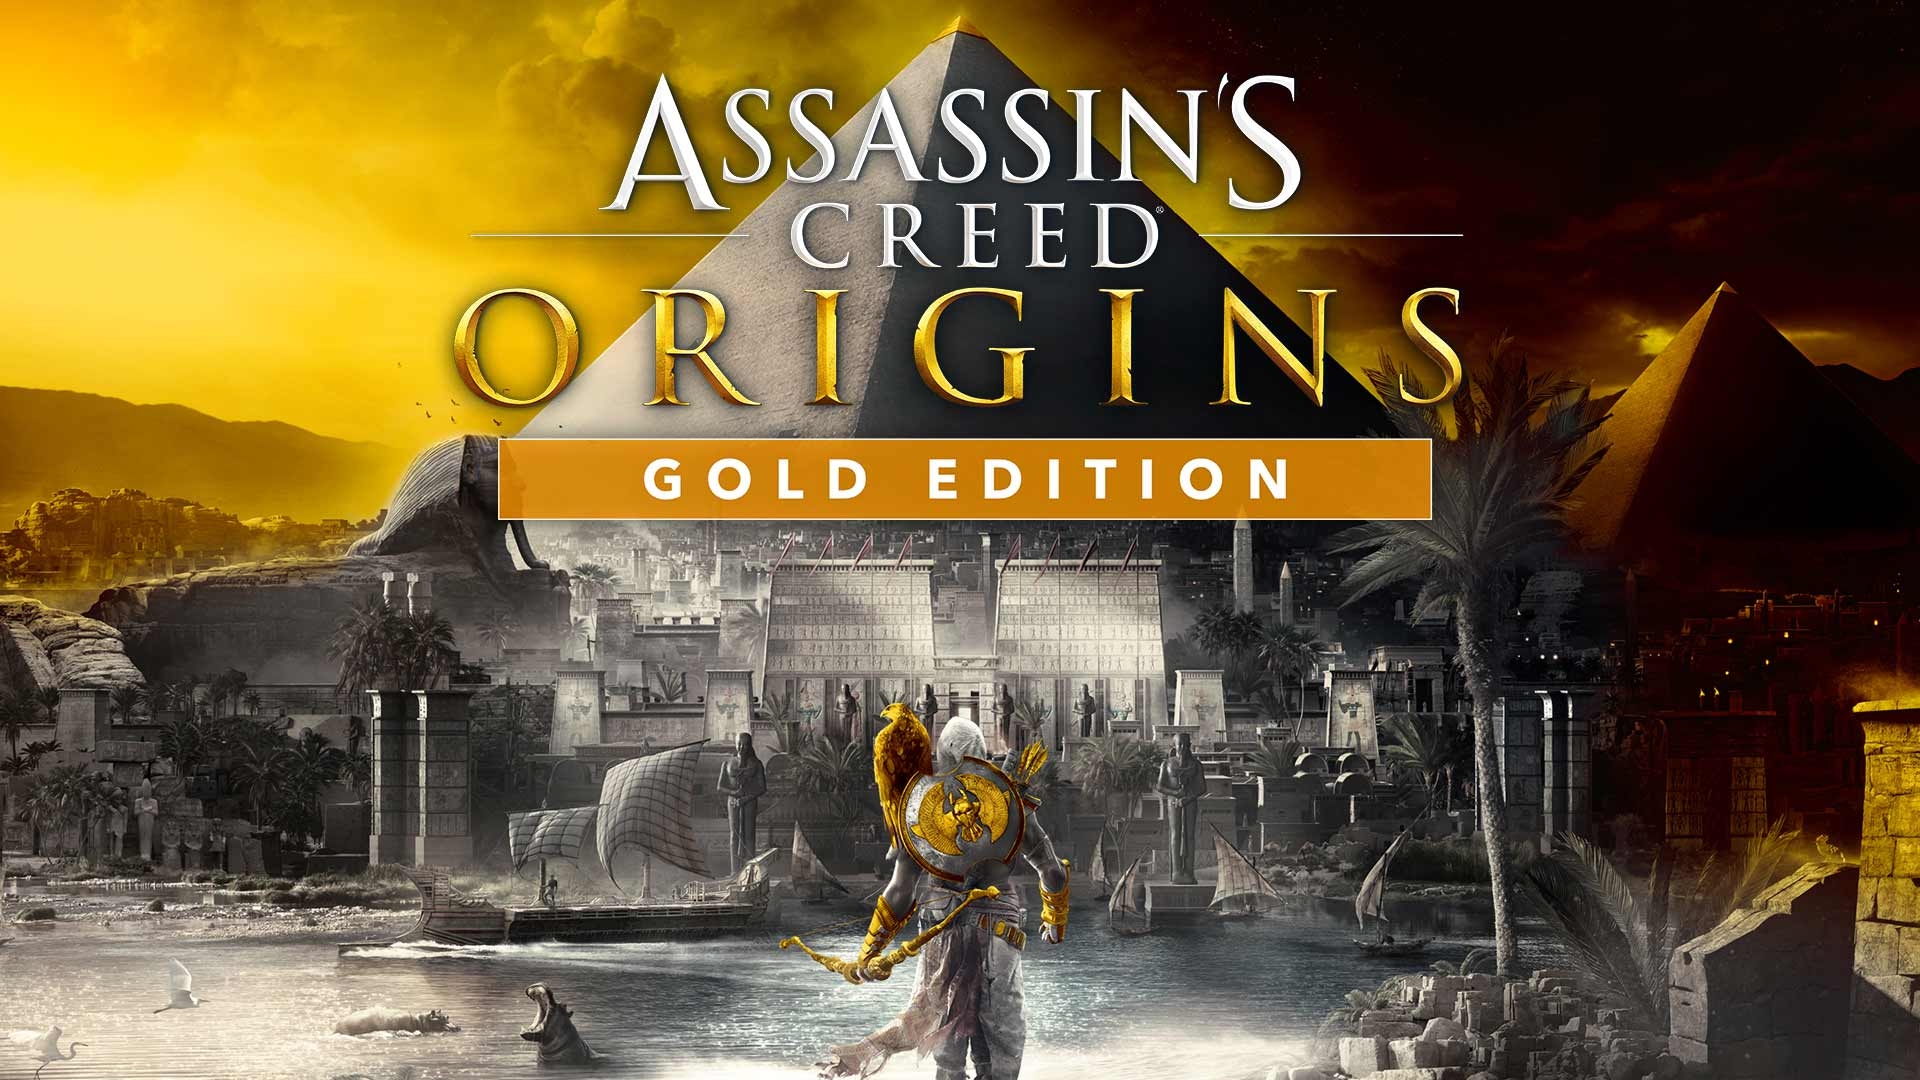 Creed Origins -  Singapore